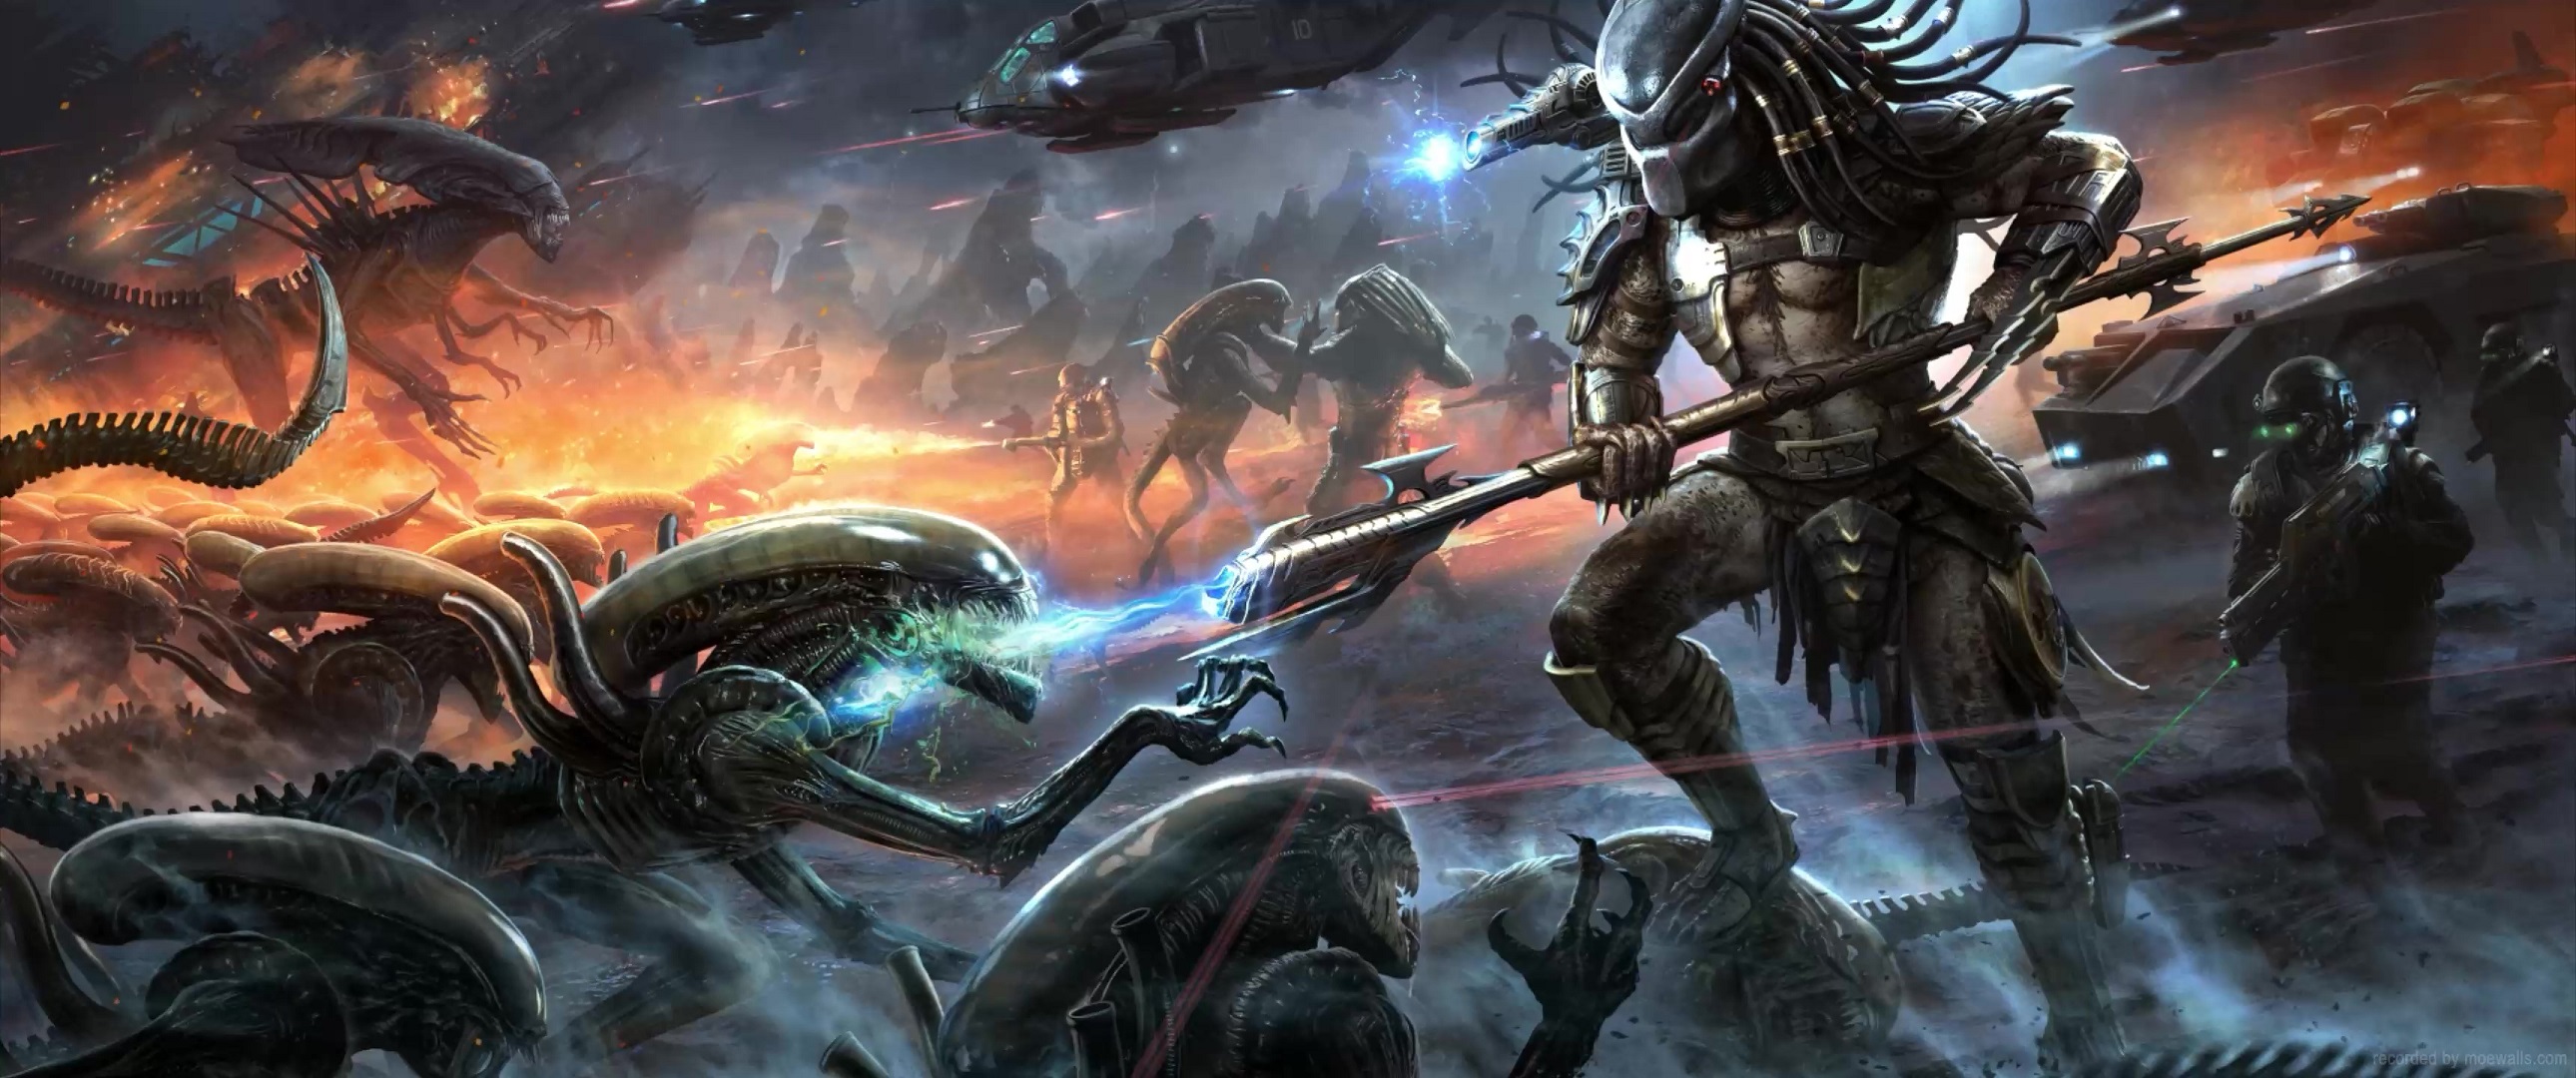 Download Alien Versus Predator Wallpaper  Wallpaperscom